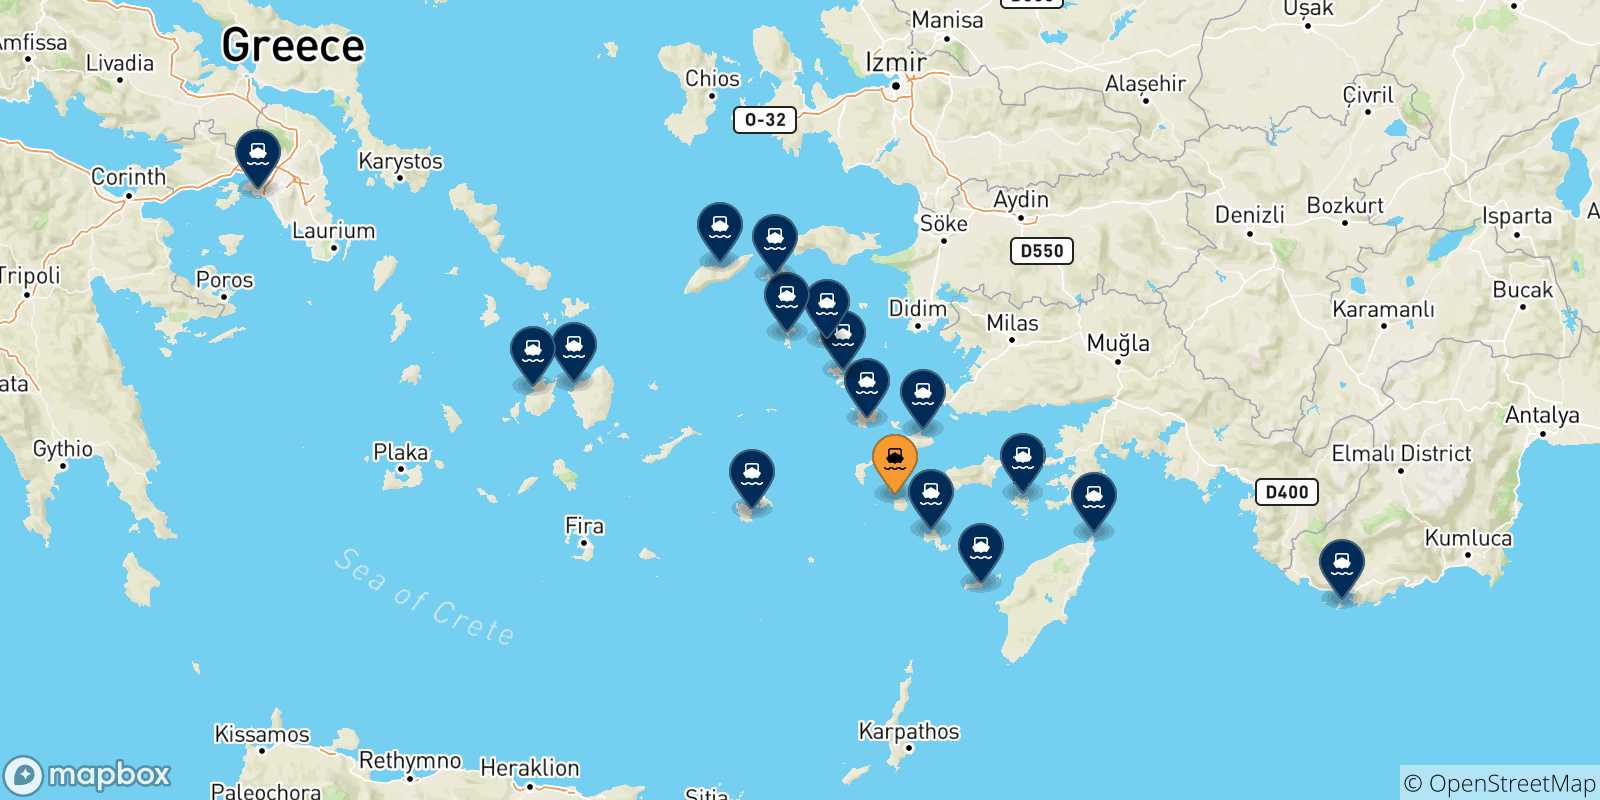 Mappa delle possibili rotte tra Nisyros e la Grecia